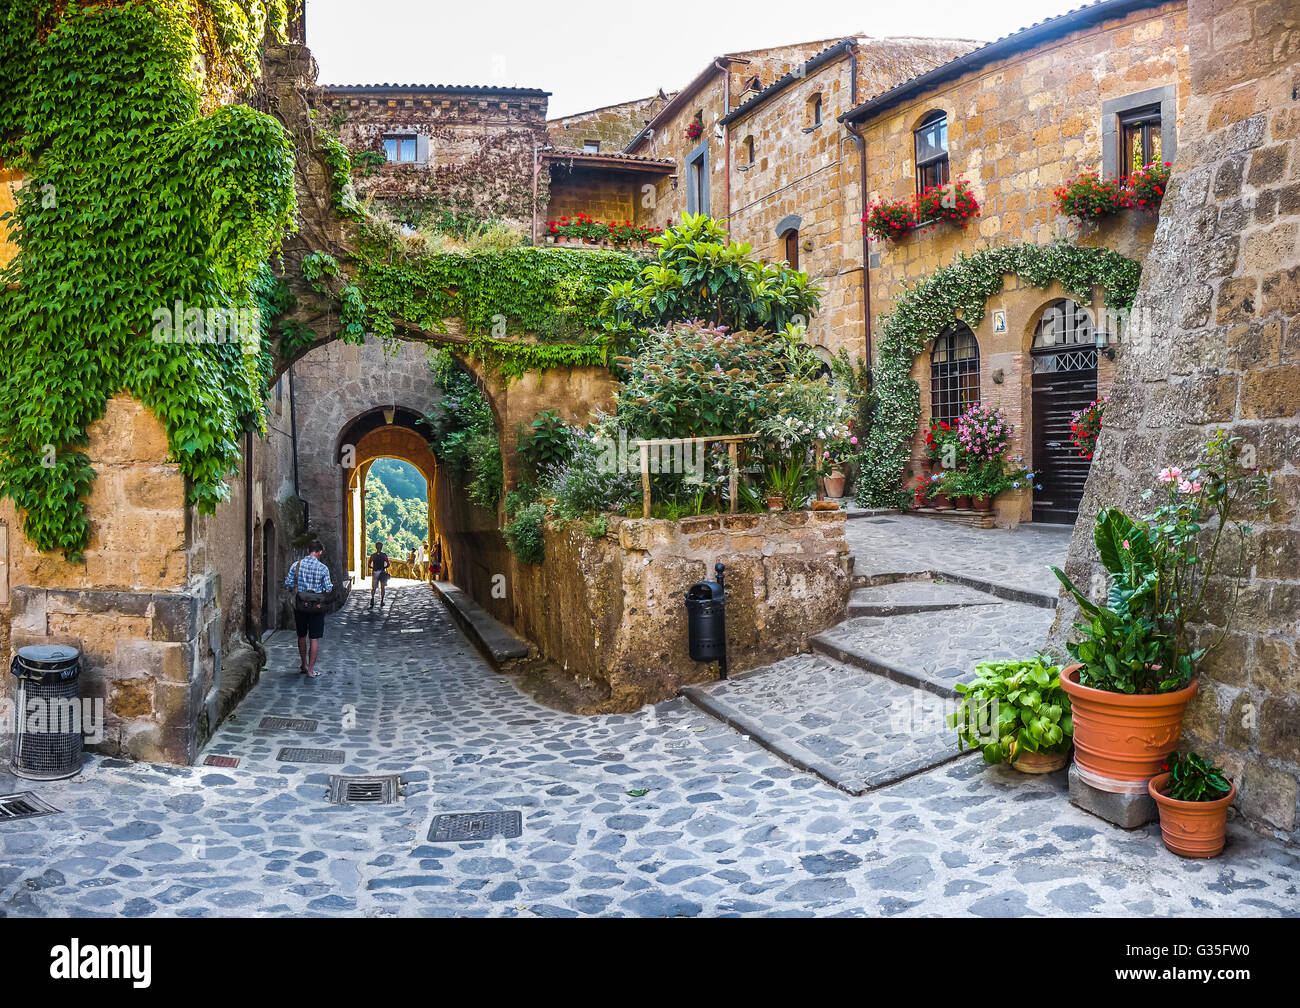 Beautiful view of idyllic alley way in famous Civita di Bagnoregio near Tiber river valley, Lazio, Italy Stock Photo